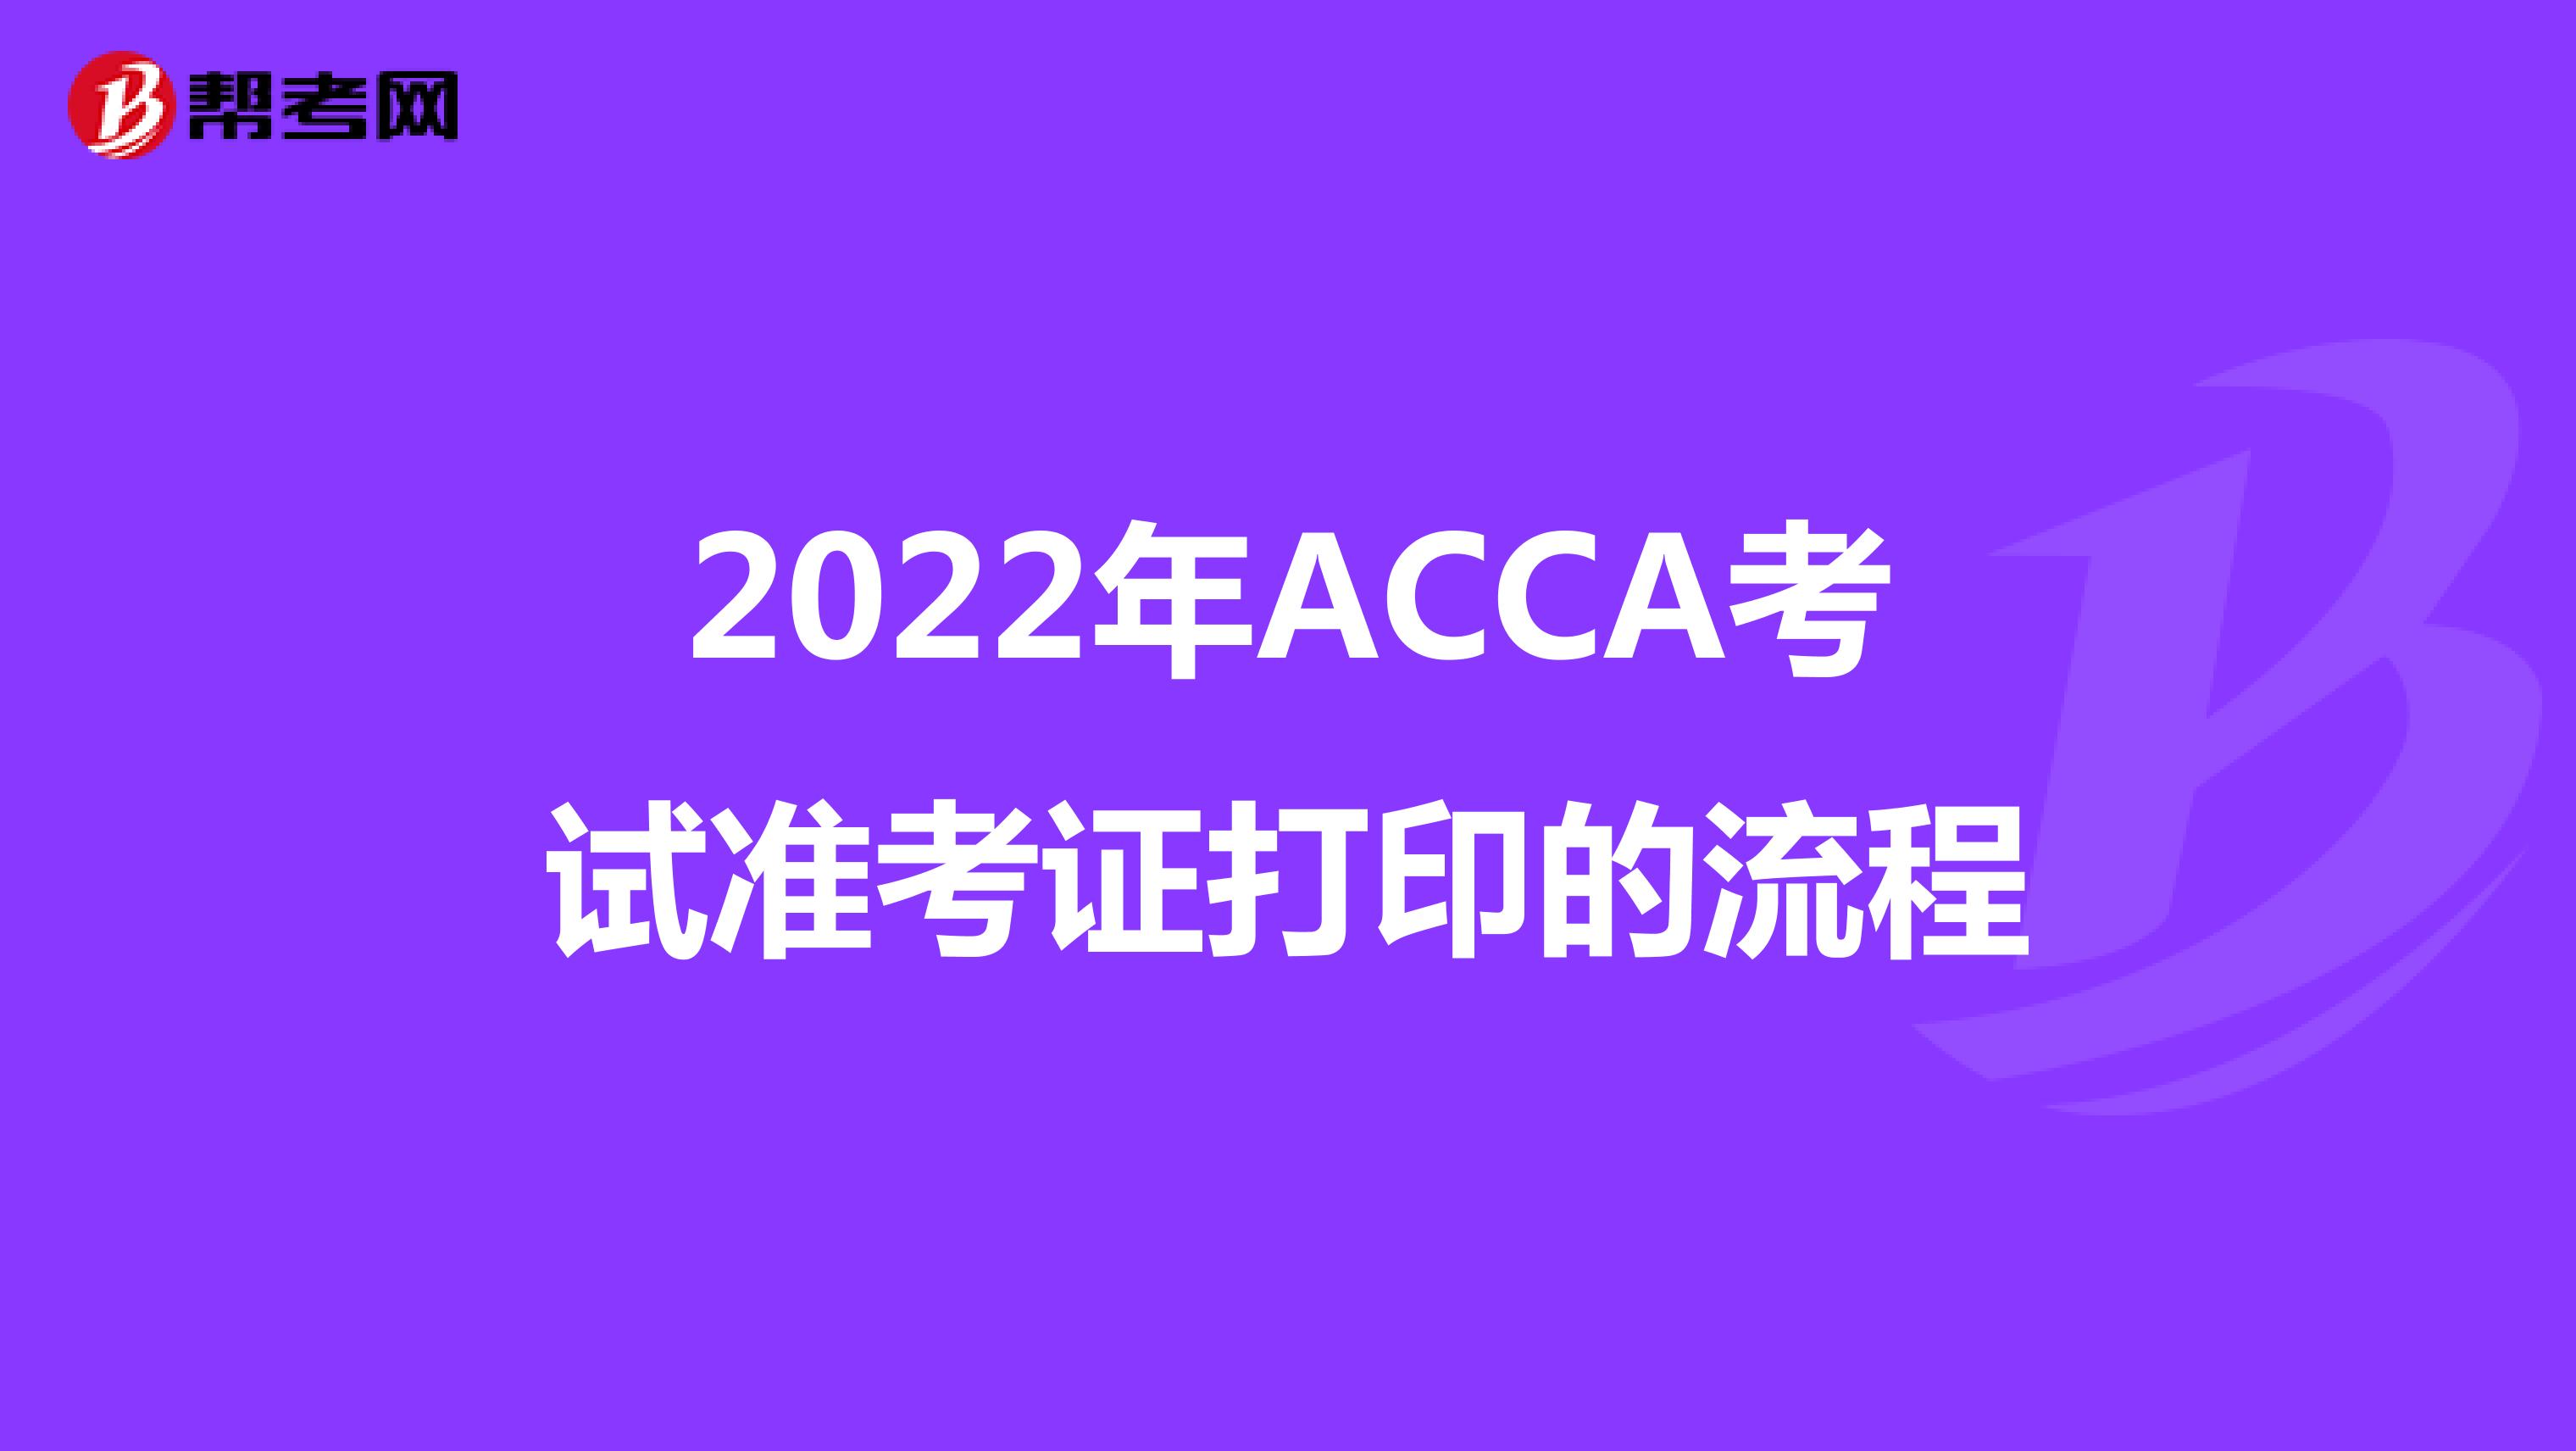 2022年ACCA考试准考证打印的流程